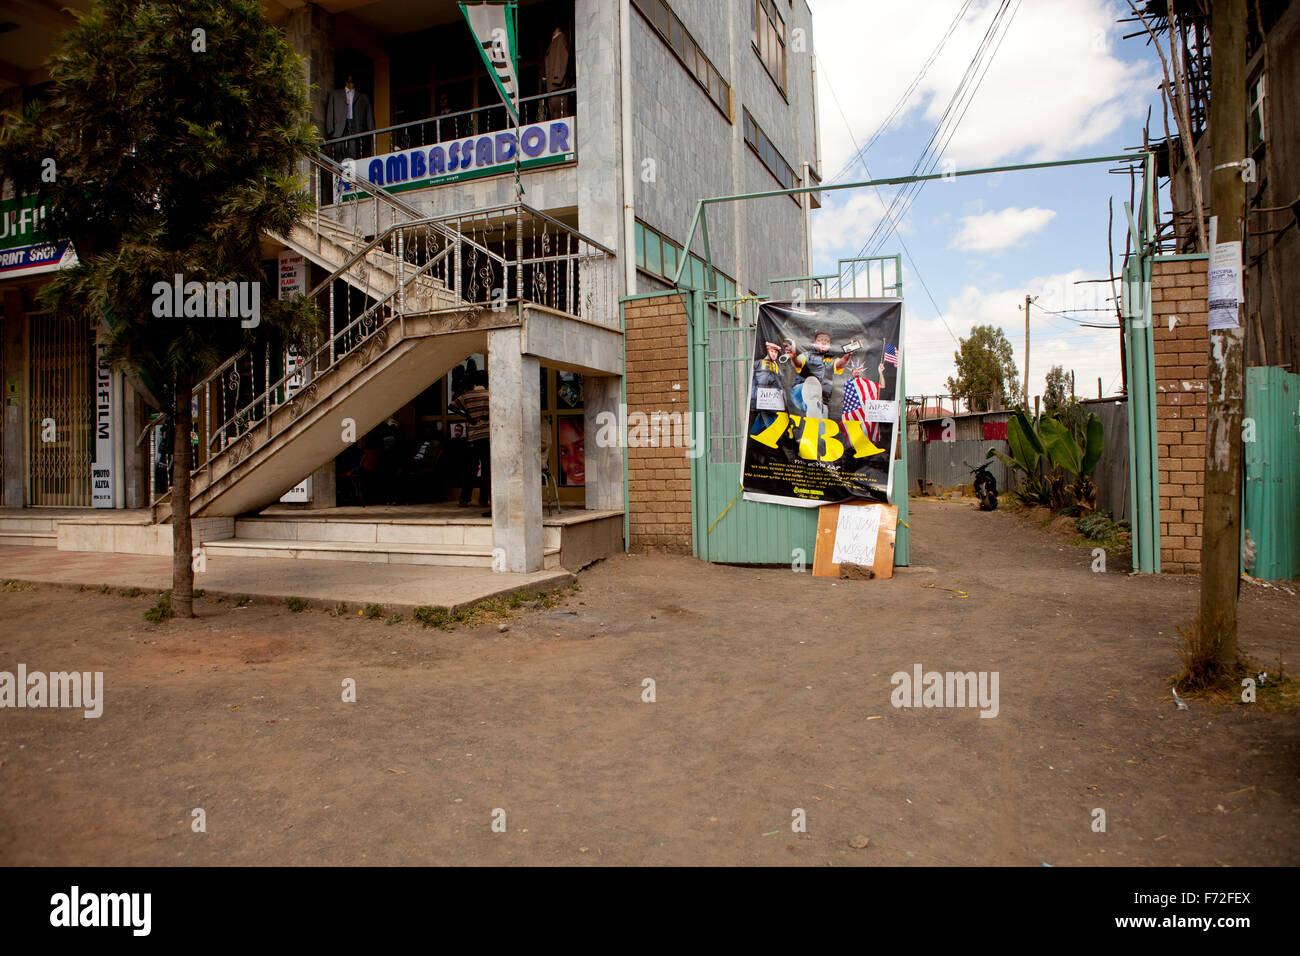 Filmposter am Gate, Botschafter, Debre Zeyit, Addis Abeba, Äthiopien, Horn von Afrika, Ostafrika, Afrika Stockfoto